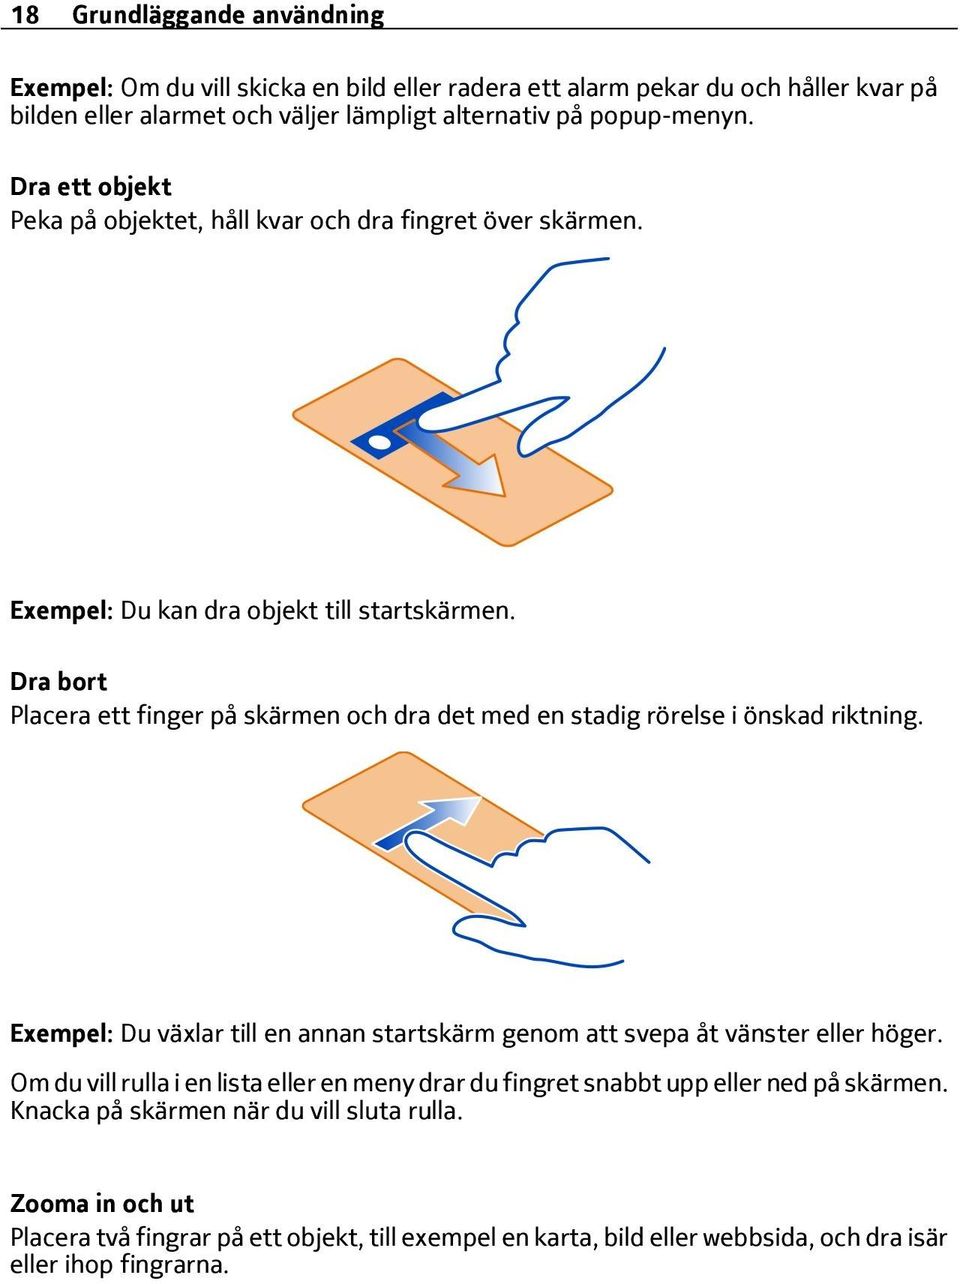 Dra bort Placera ett finger på skärmen och dra det med en stadig rörelse i önskad riktning. Exempel: Du växlar till en annan startskärm genom att svepa åt vänster eller höger.